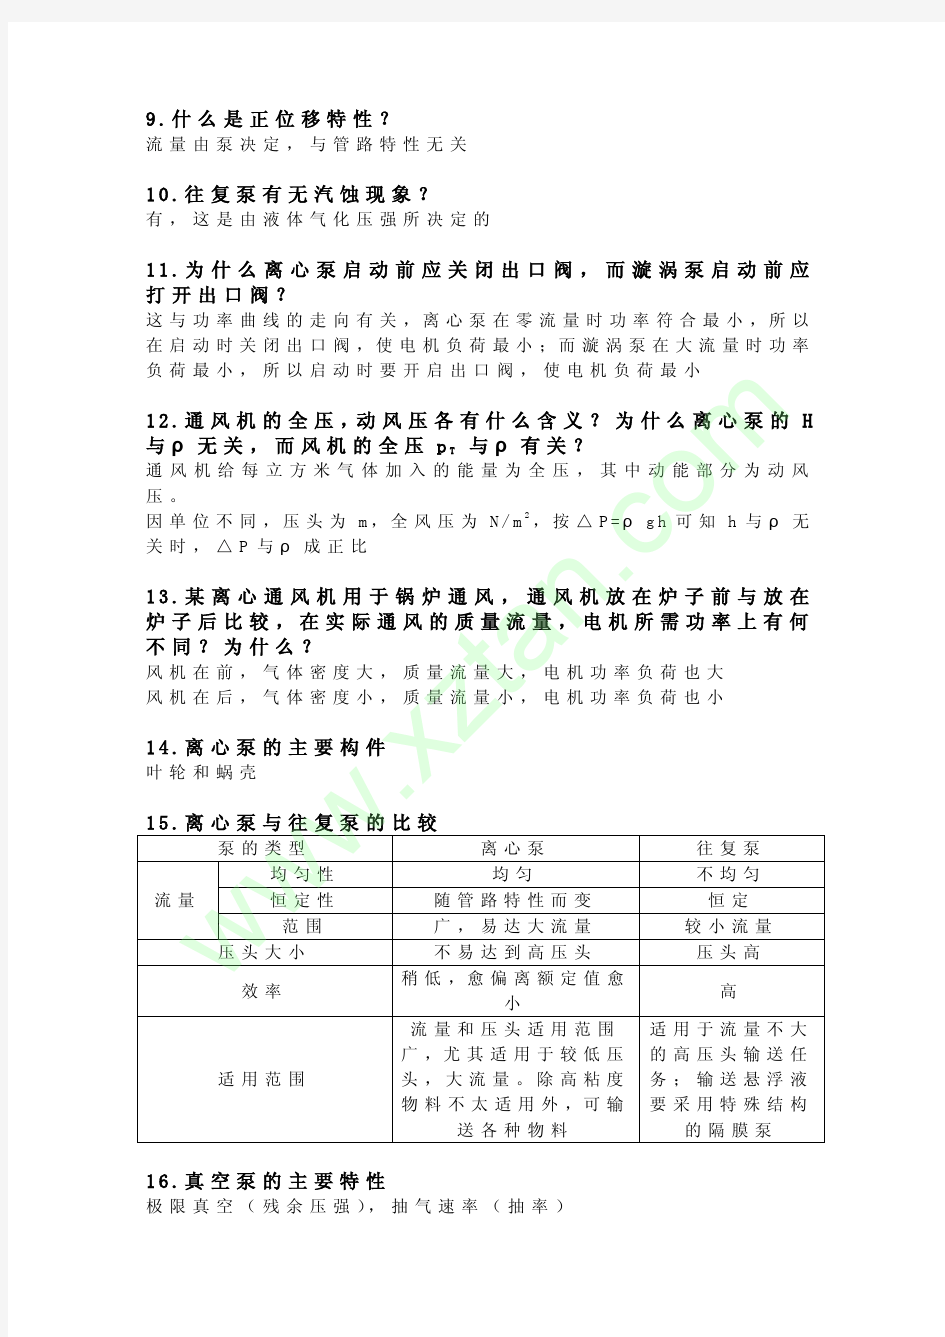 华东理工大学考研真题化工原理简答题资料 (7)